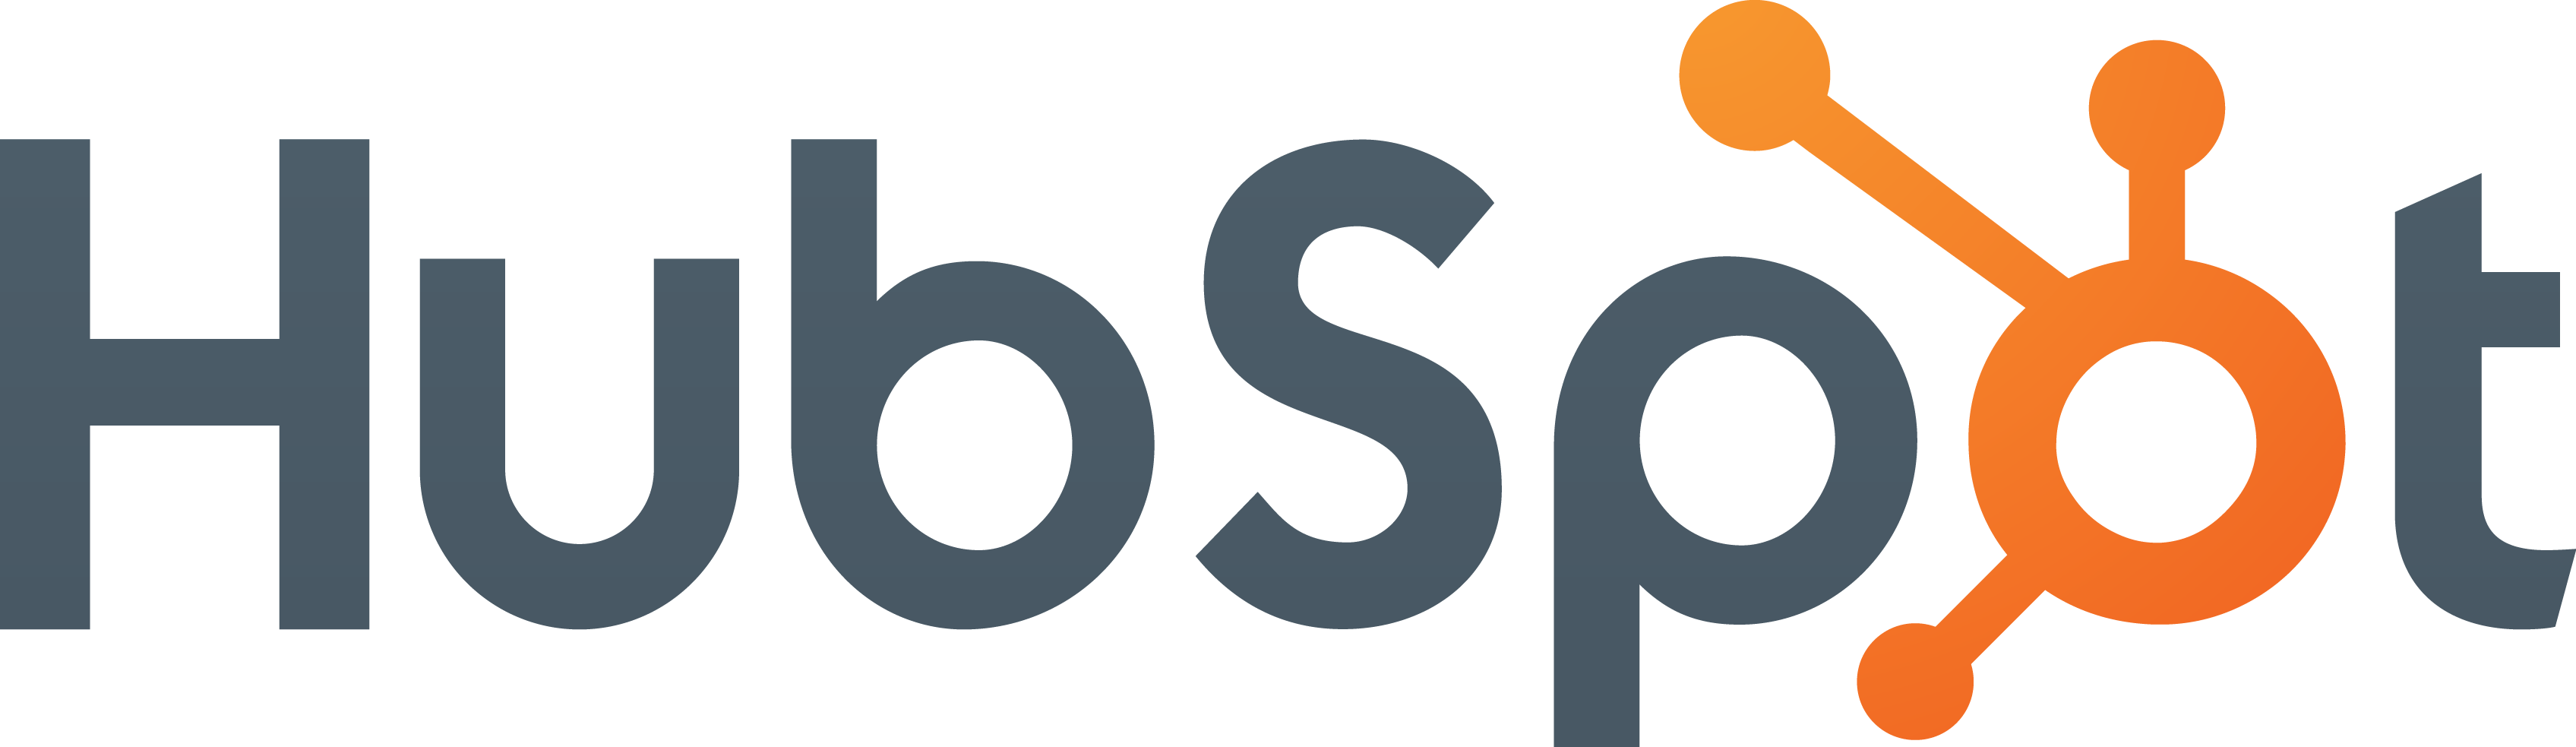 Hubspot logo - Zoom customer